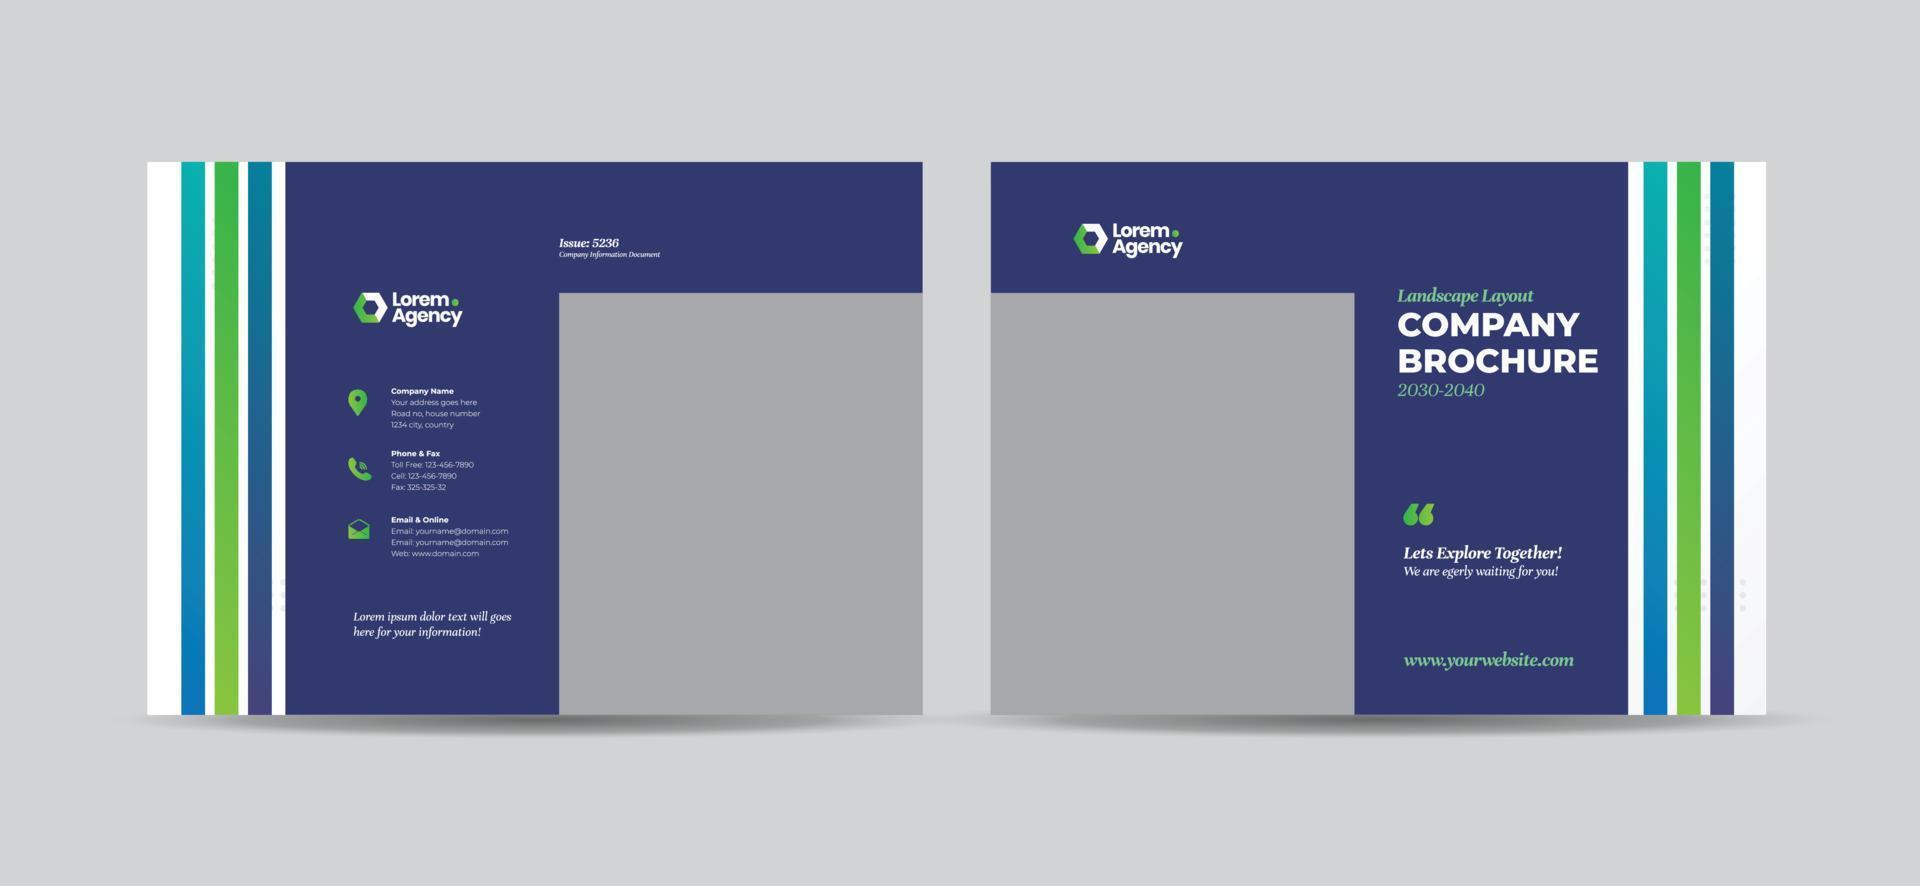 design della copertina dell'opuscolo di affari del paesaggio o design della copertina del libretto del profilo aziendale e del rapporto annuale vettore